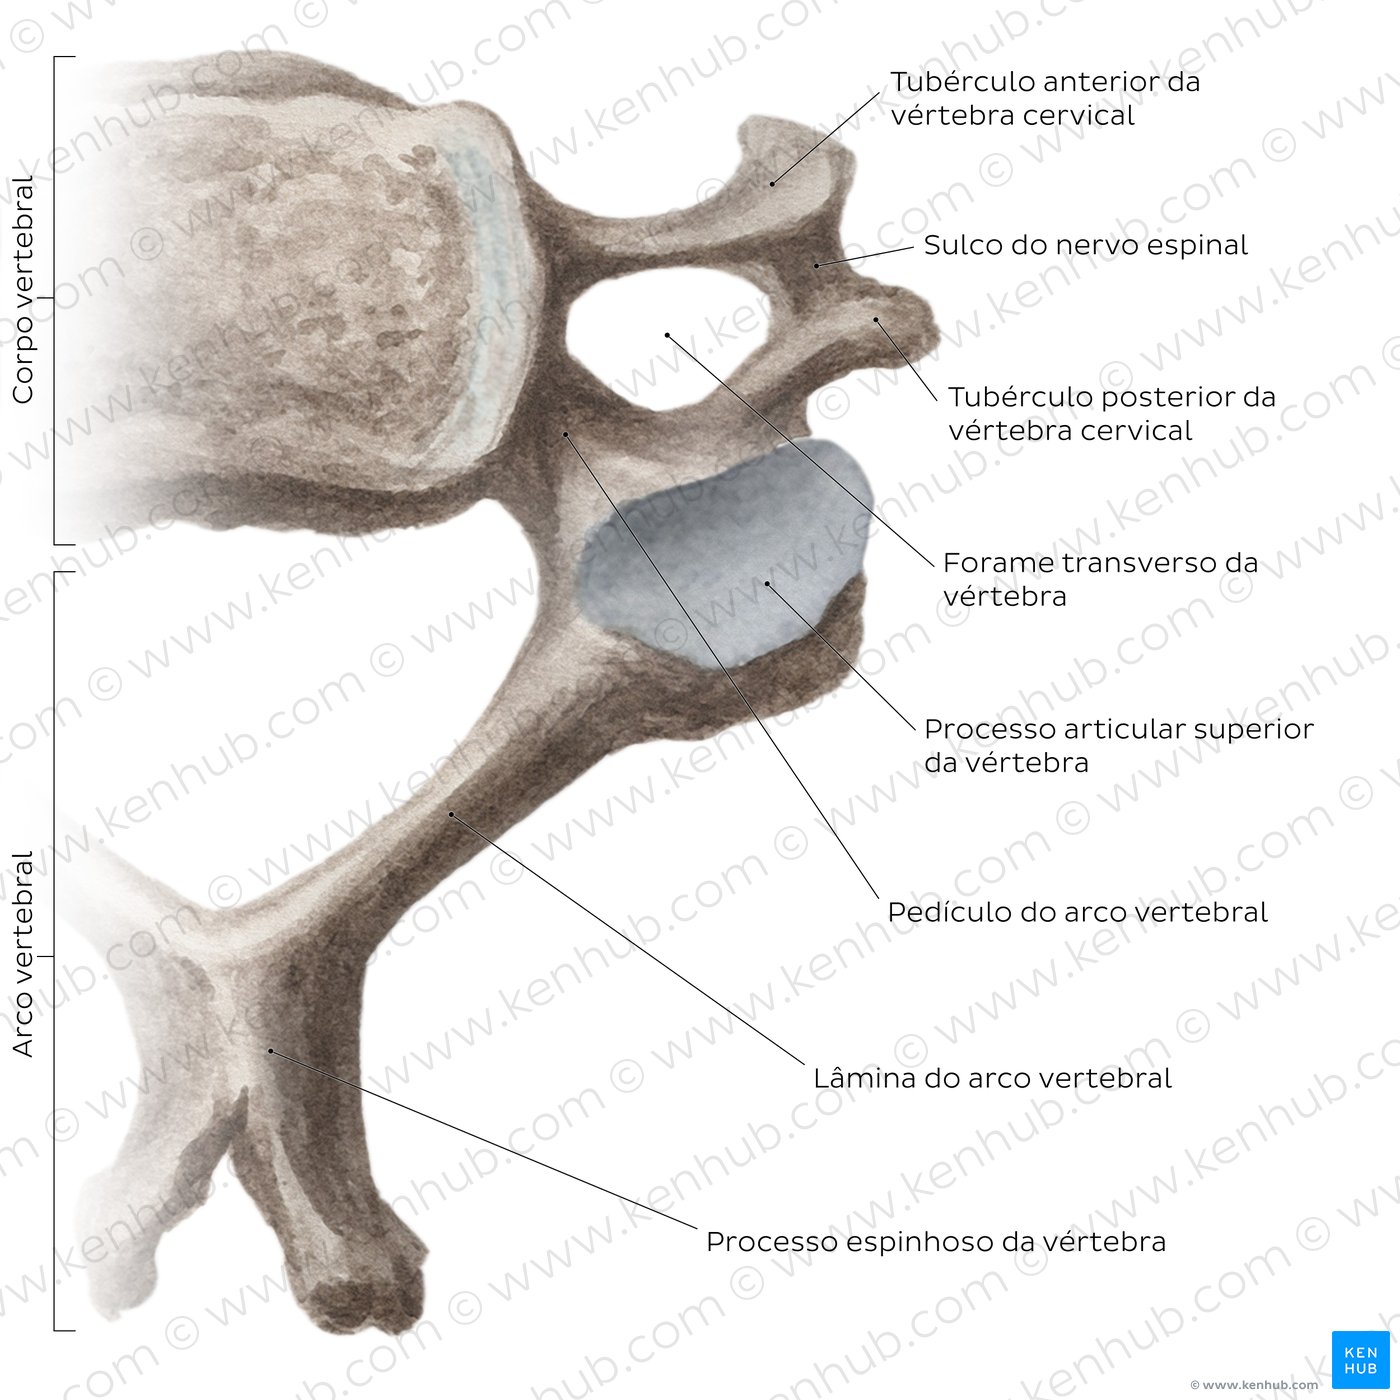 Vértebras cervicais típicas